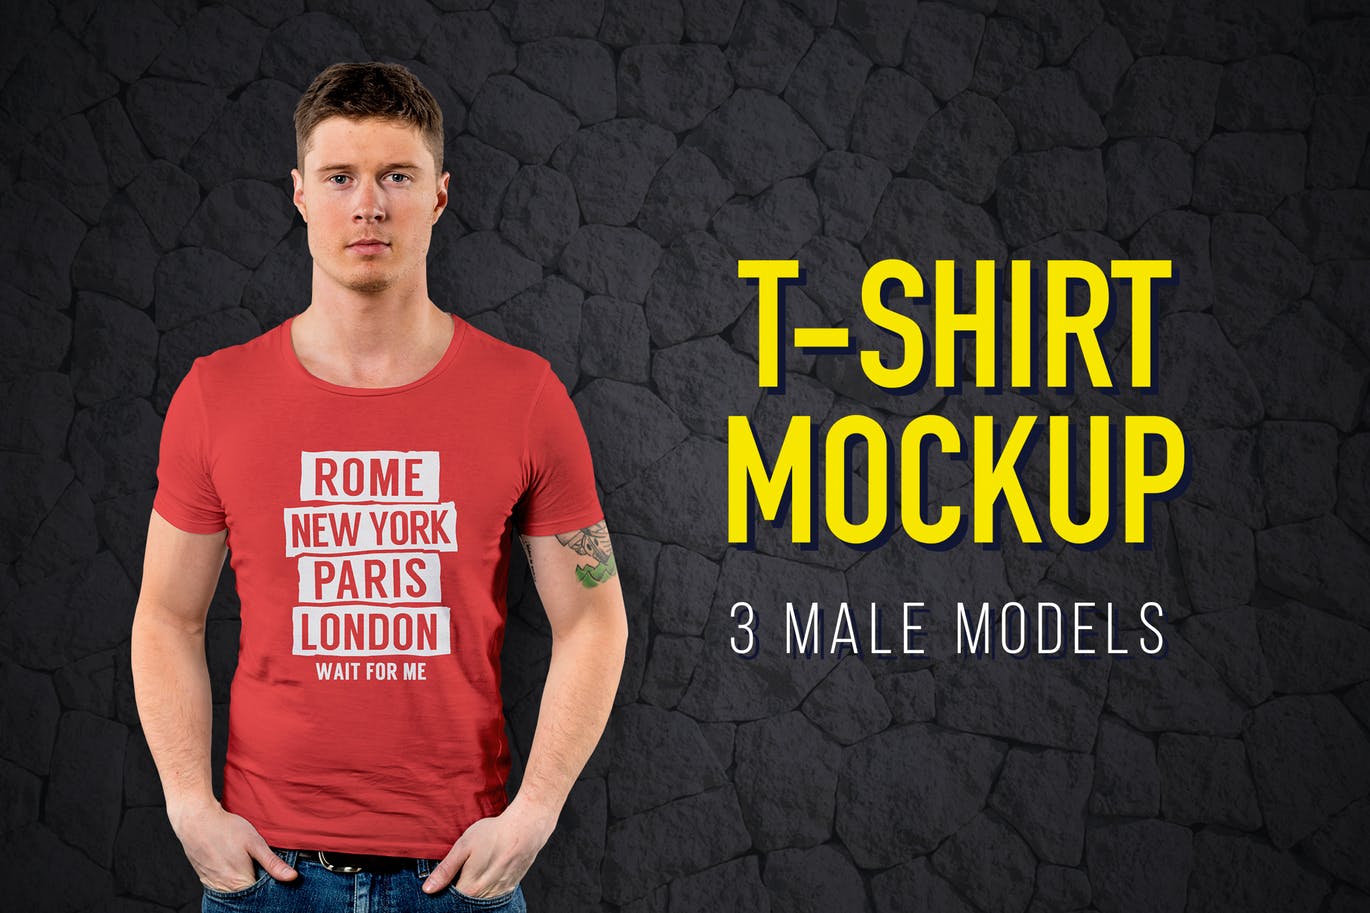 男士T恤服装设计模特上身效果图样机 T-Shirt Mockup插图